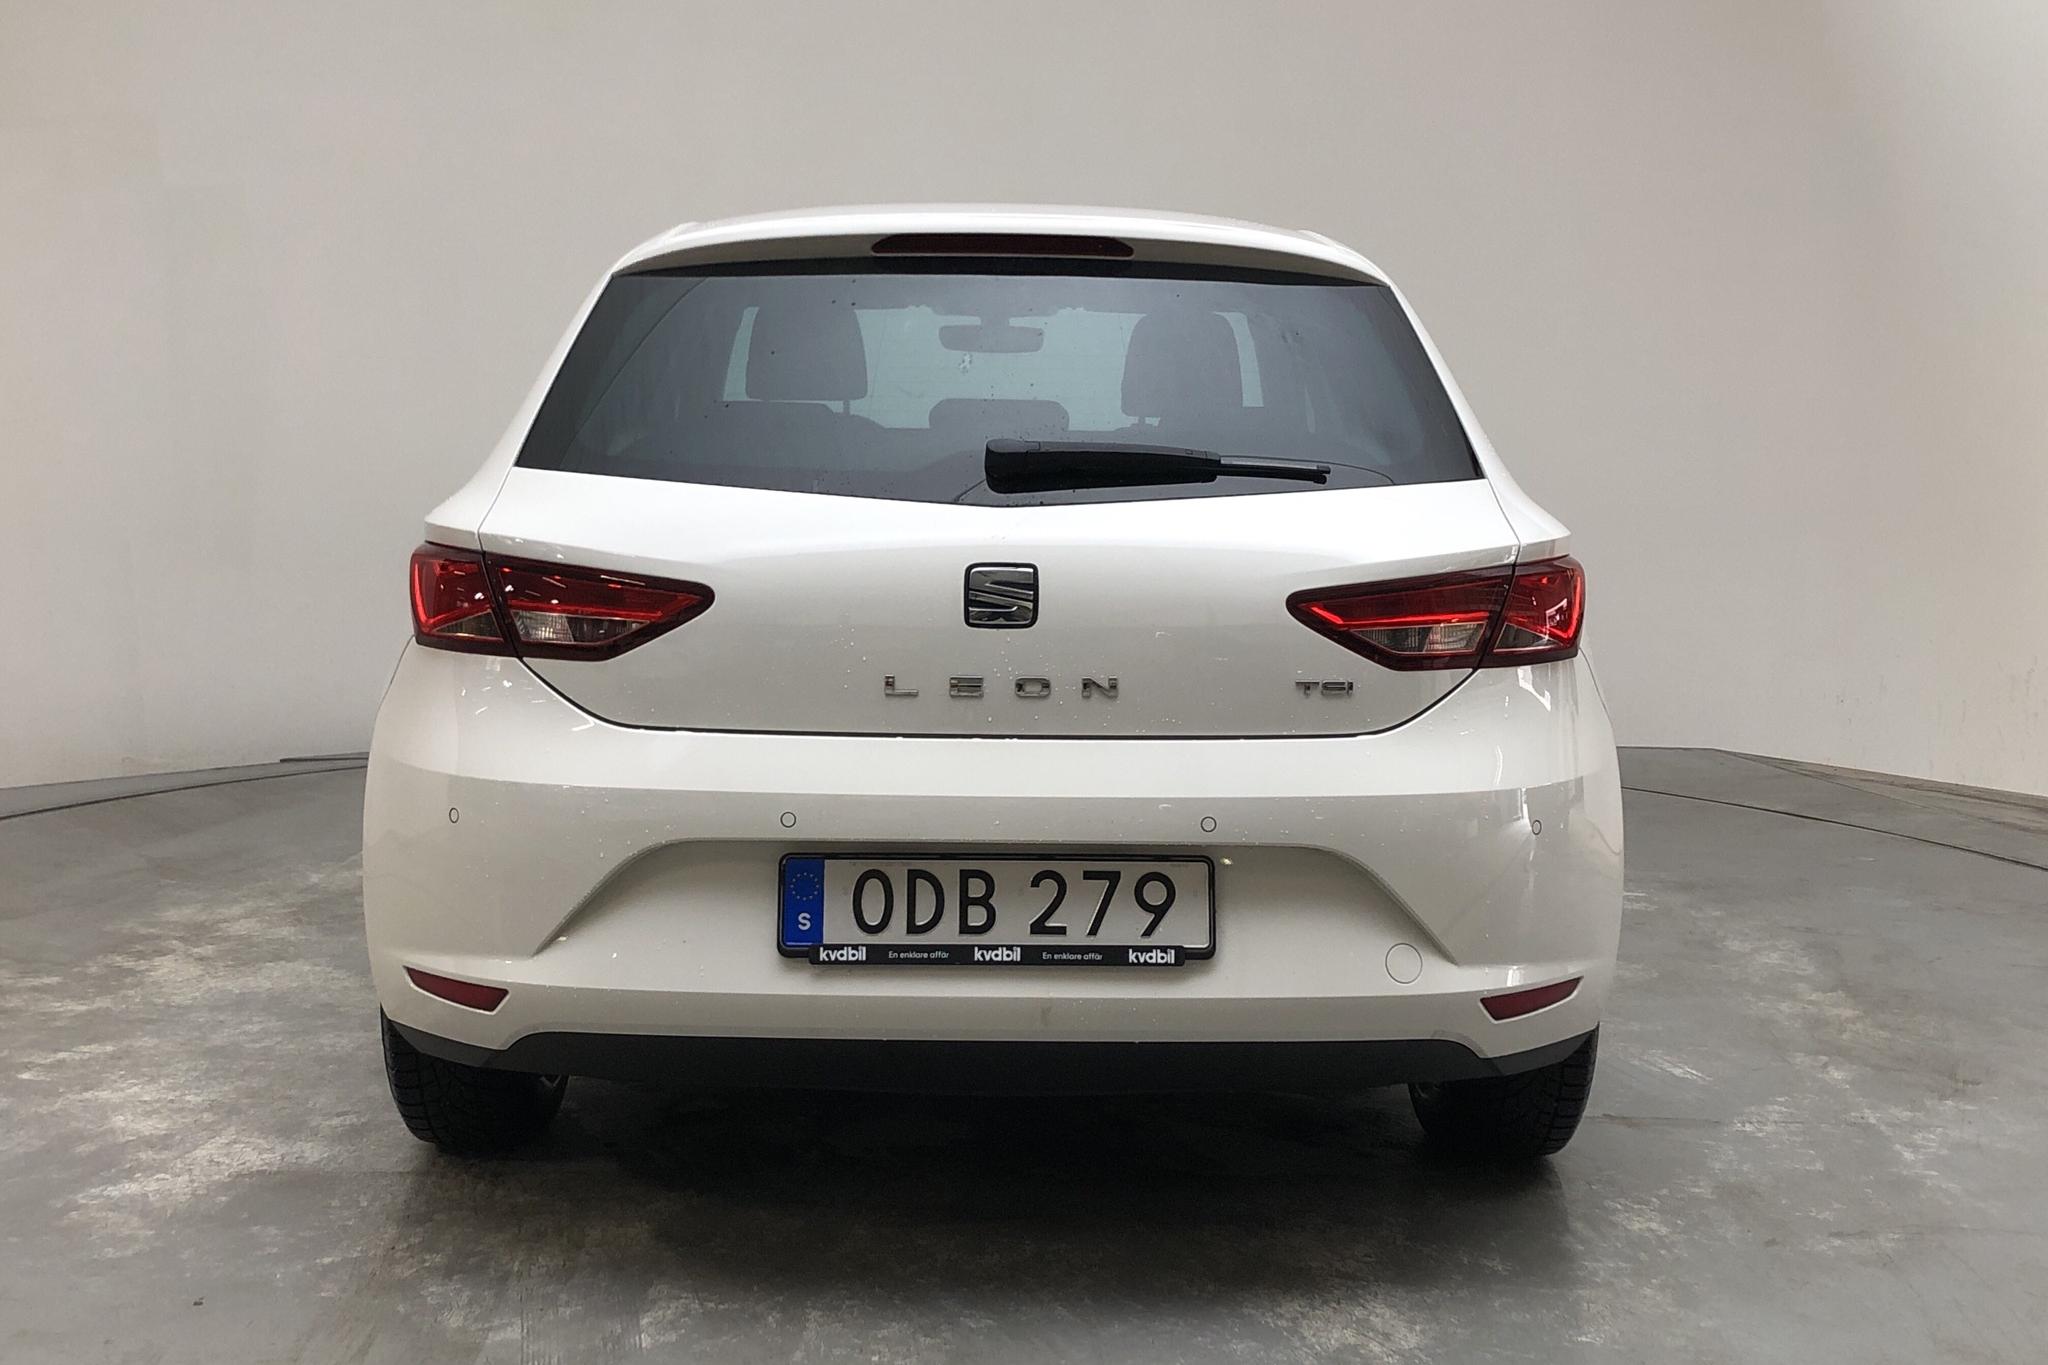 Seat Leon 1.2 TSI 5dr (110hk) - 81 500 km - Manual - white - 2016